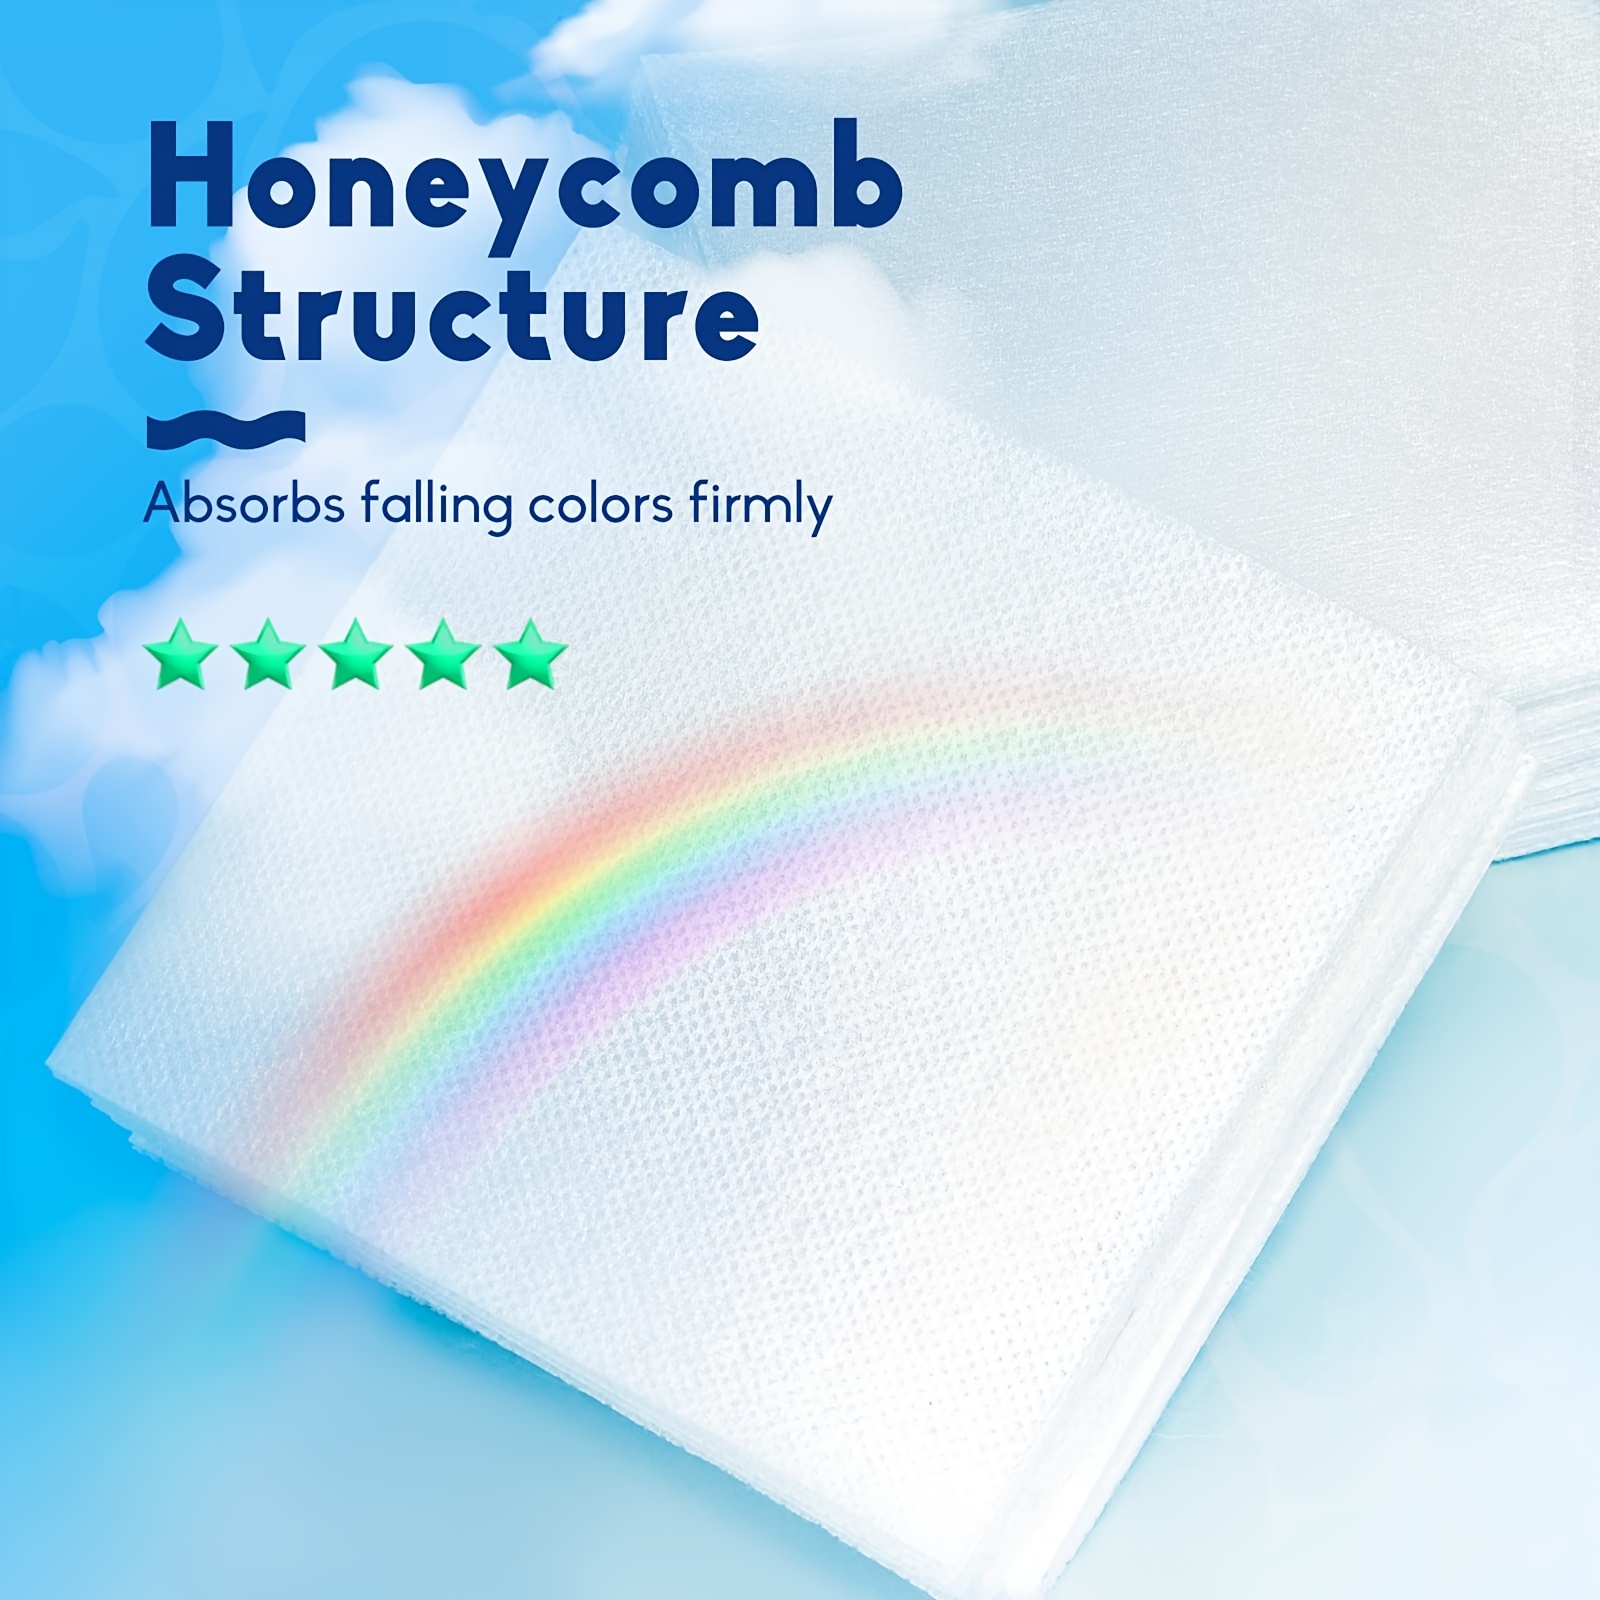 Dylon Colour Catcher Complete Action Laundry Sheets – 50 Sheets